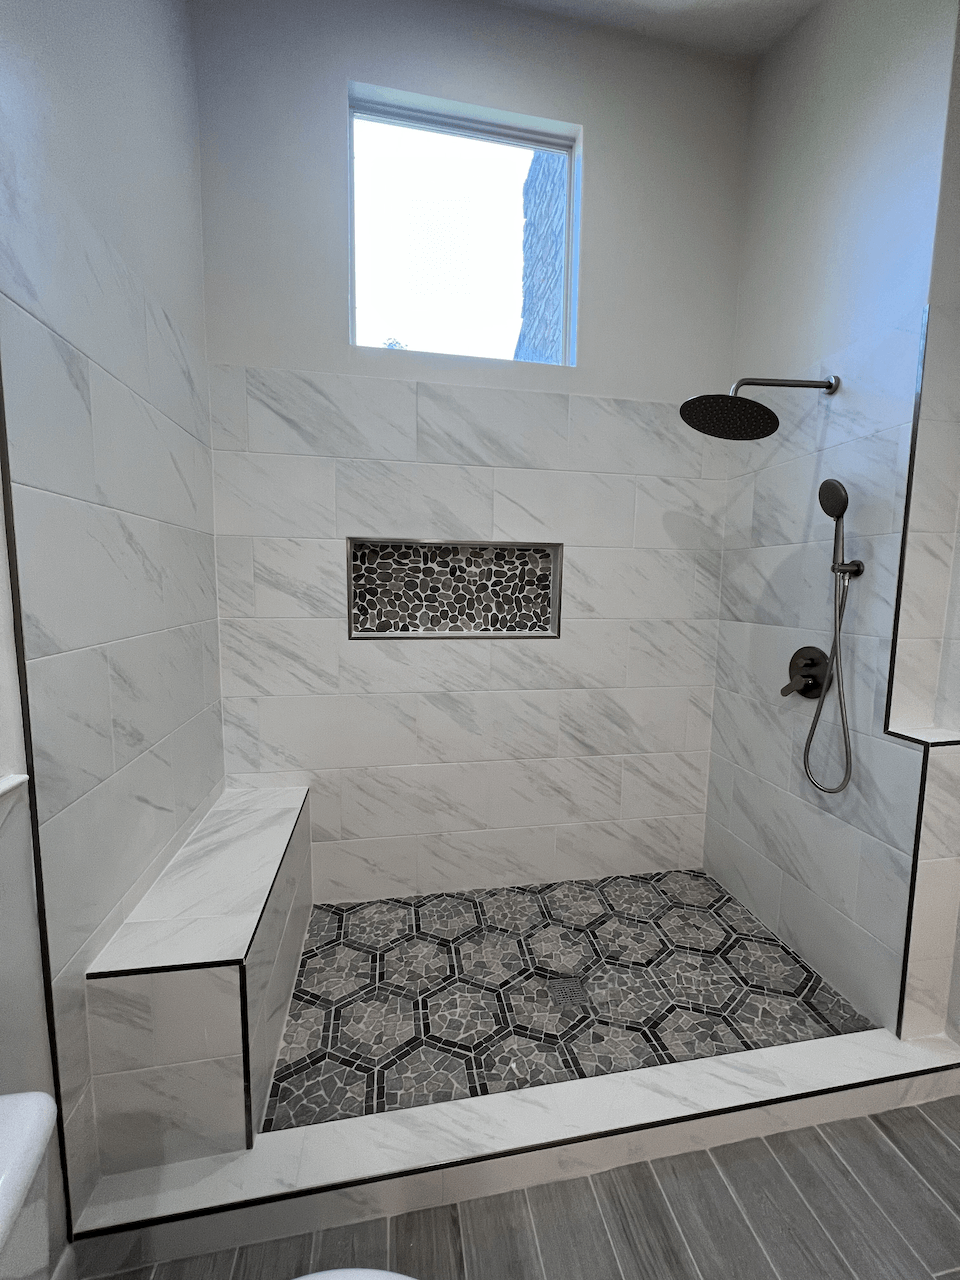 Tile Installation - Tile Pros Austin